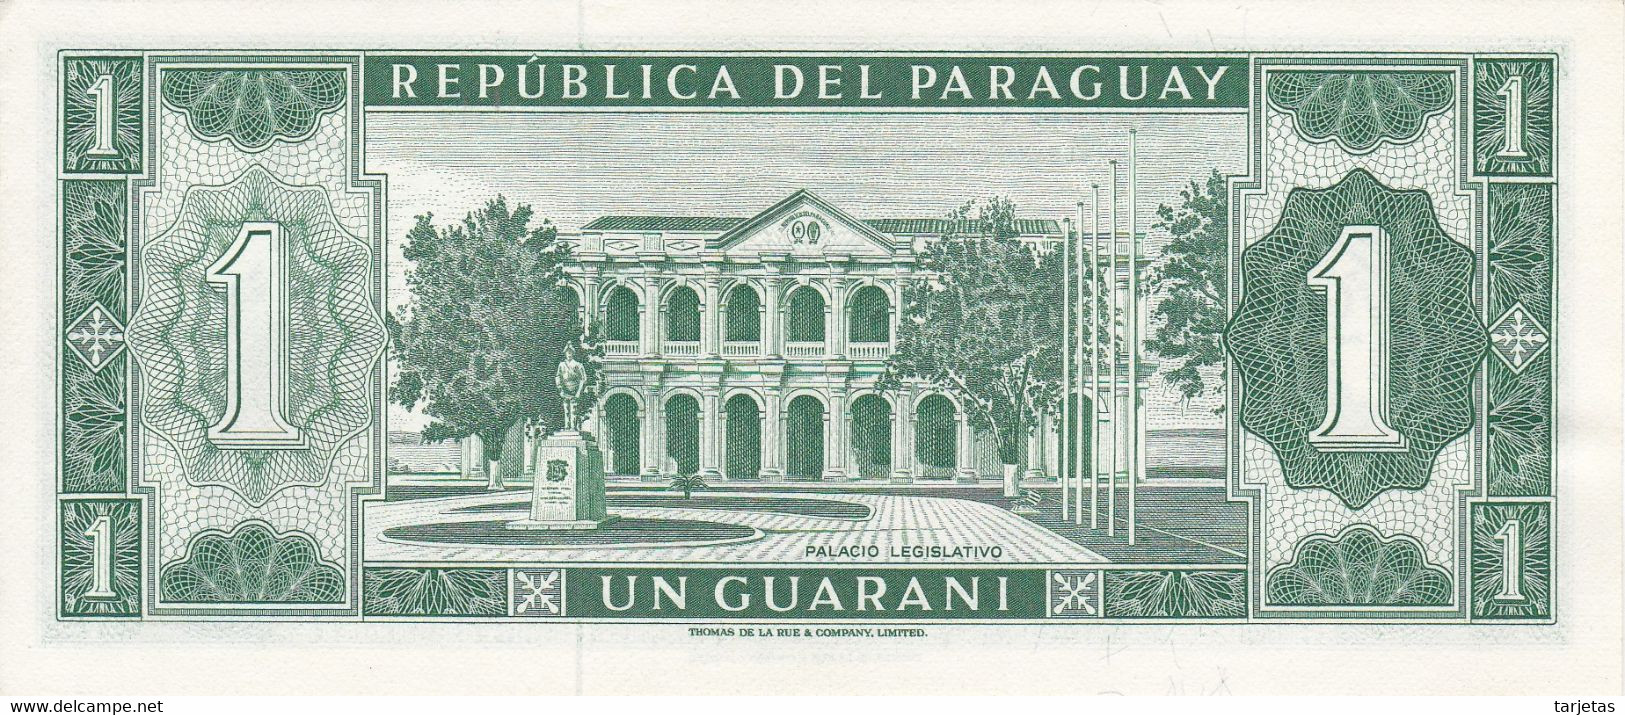 BILLETE DE PARAGUAY DE 1 GUARANI DEL AÑO 1952  (BANKNOTE) SIN CIRCULAR-UNCIRCULATED - Paraguay